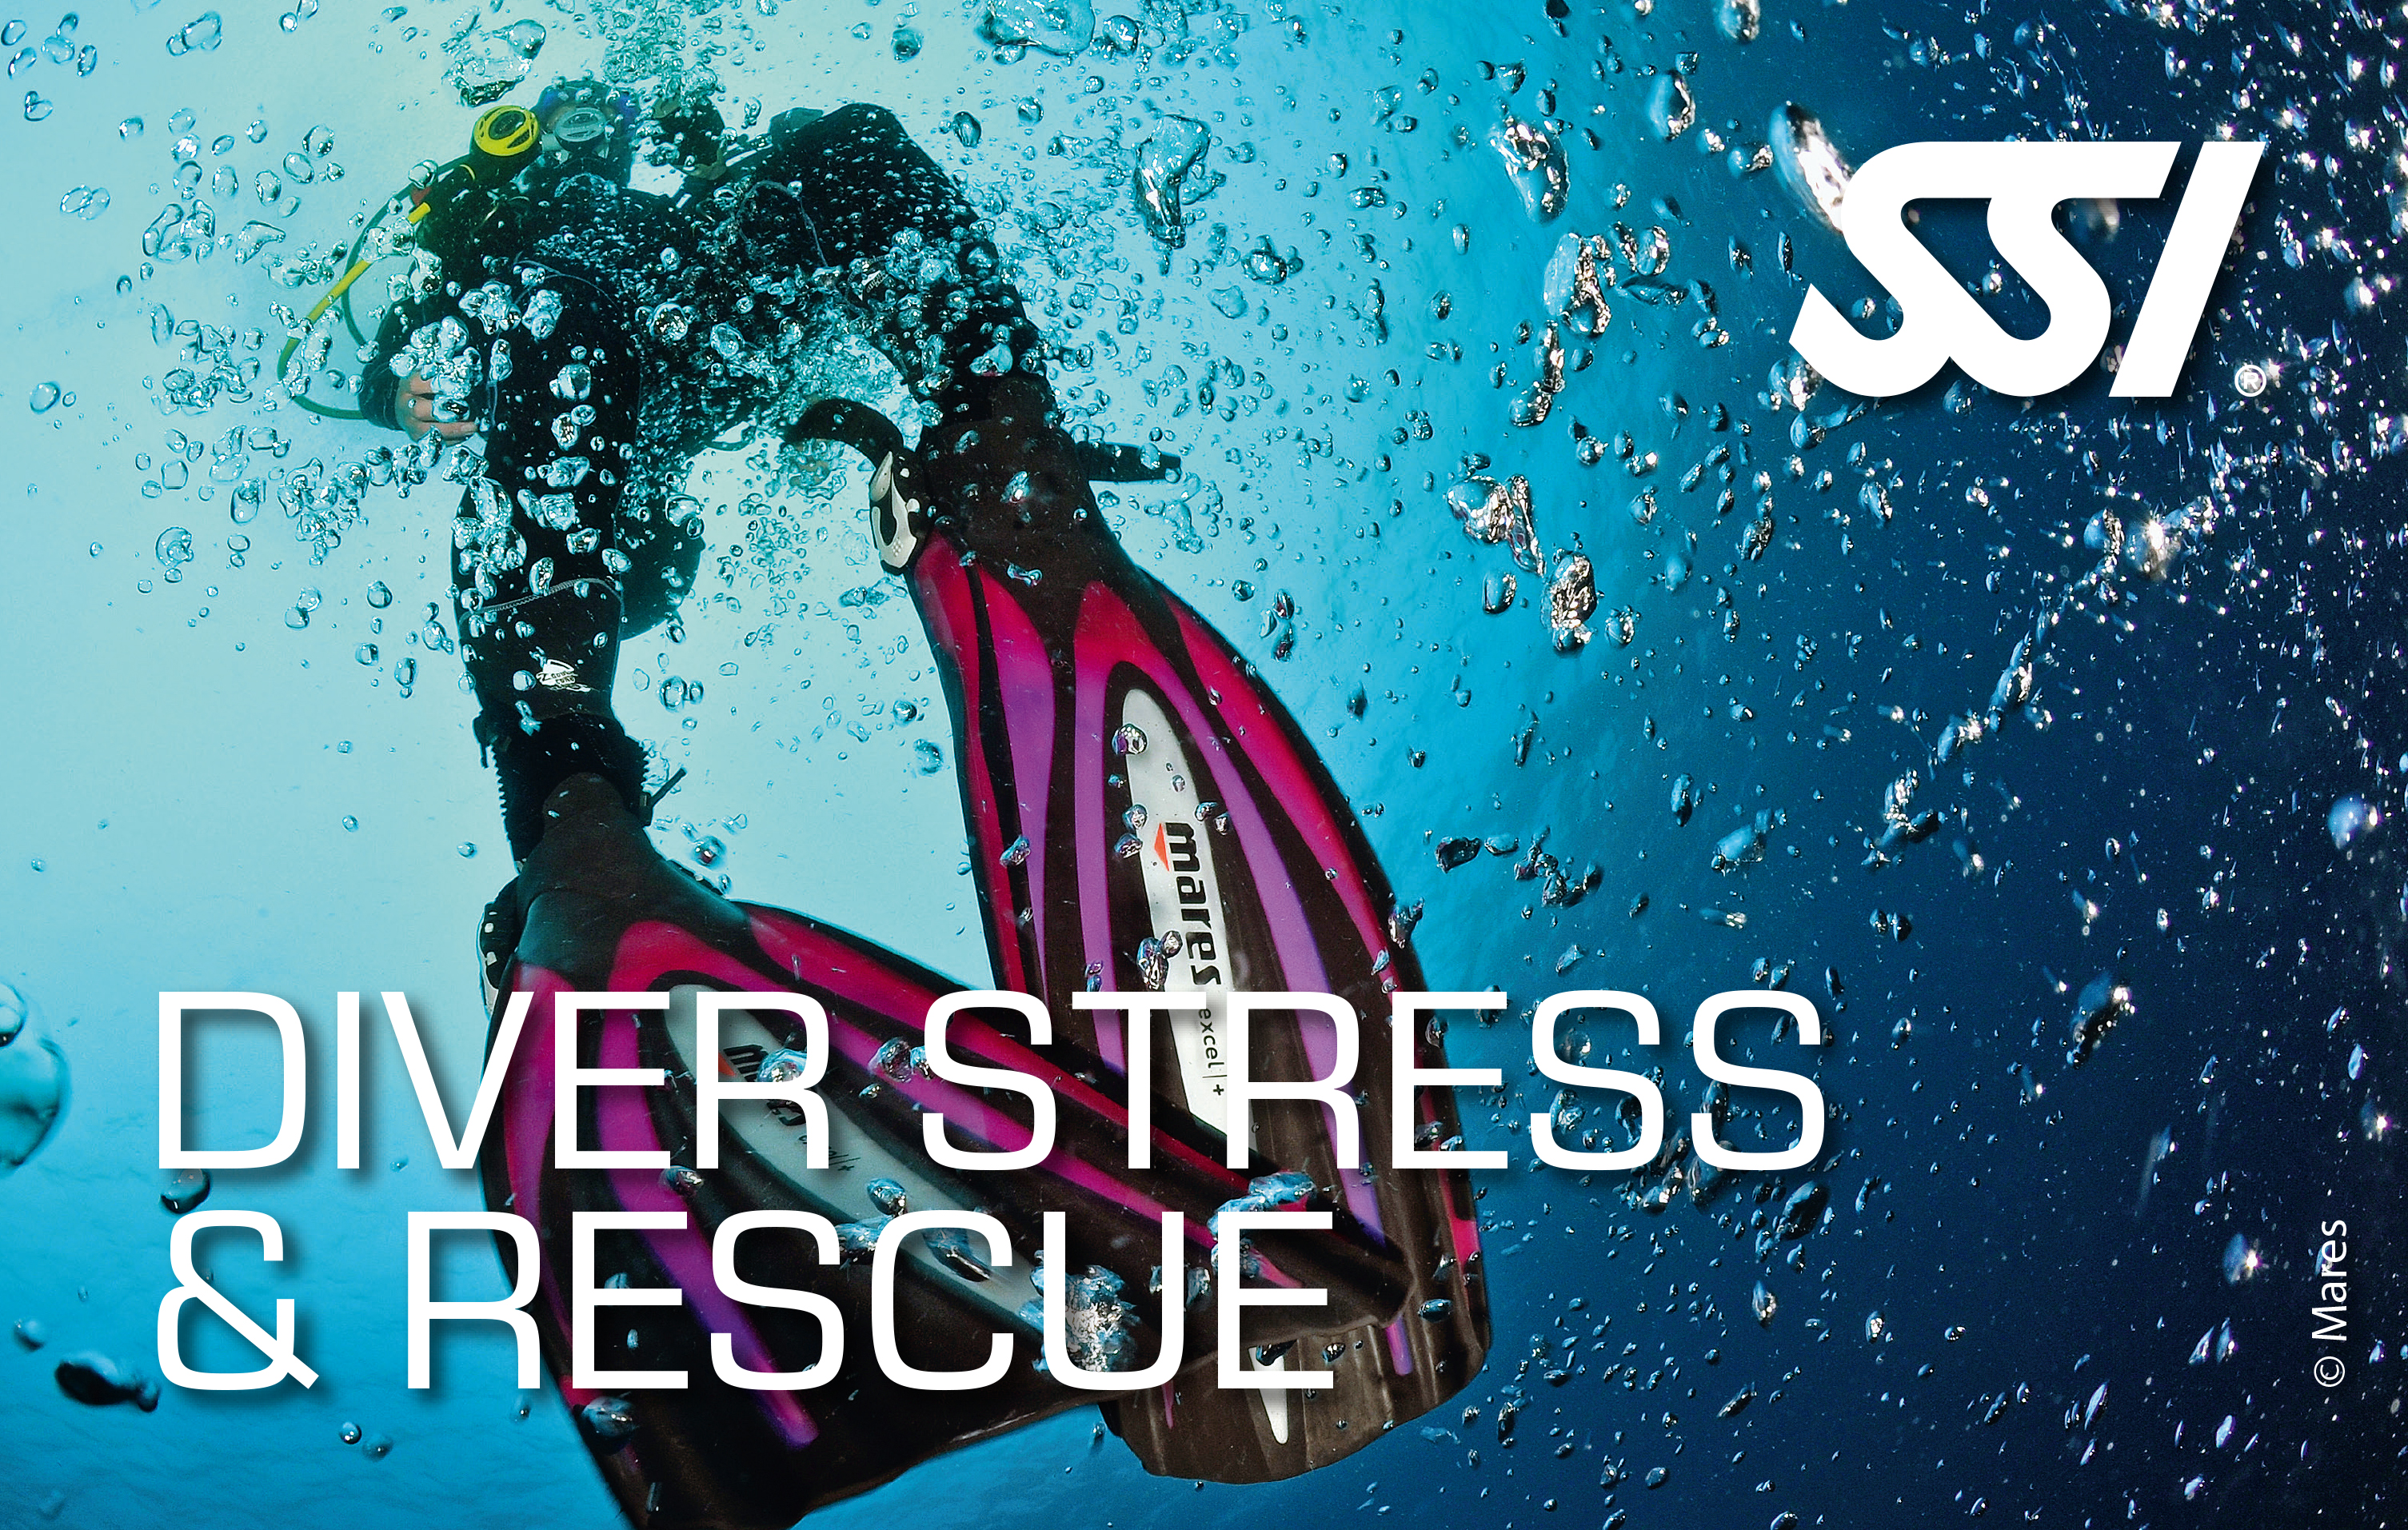 Diver Stress & Rescue SSI Into The Se ASD